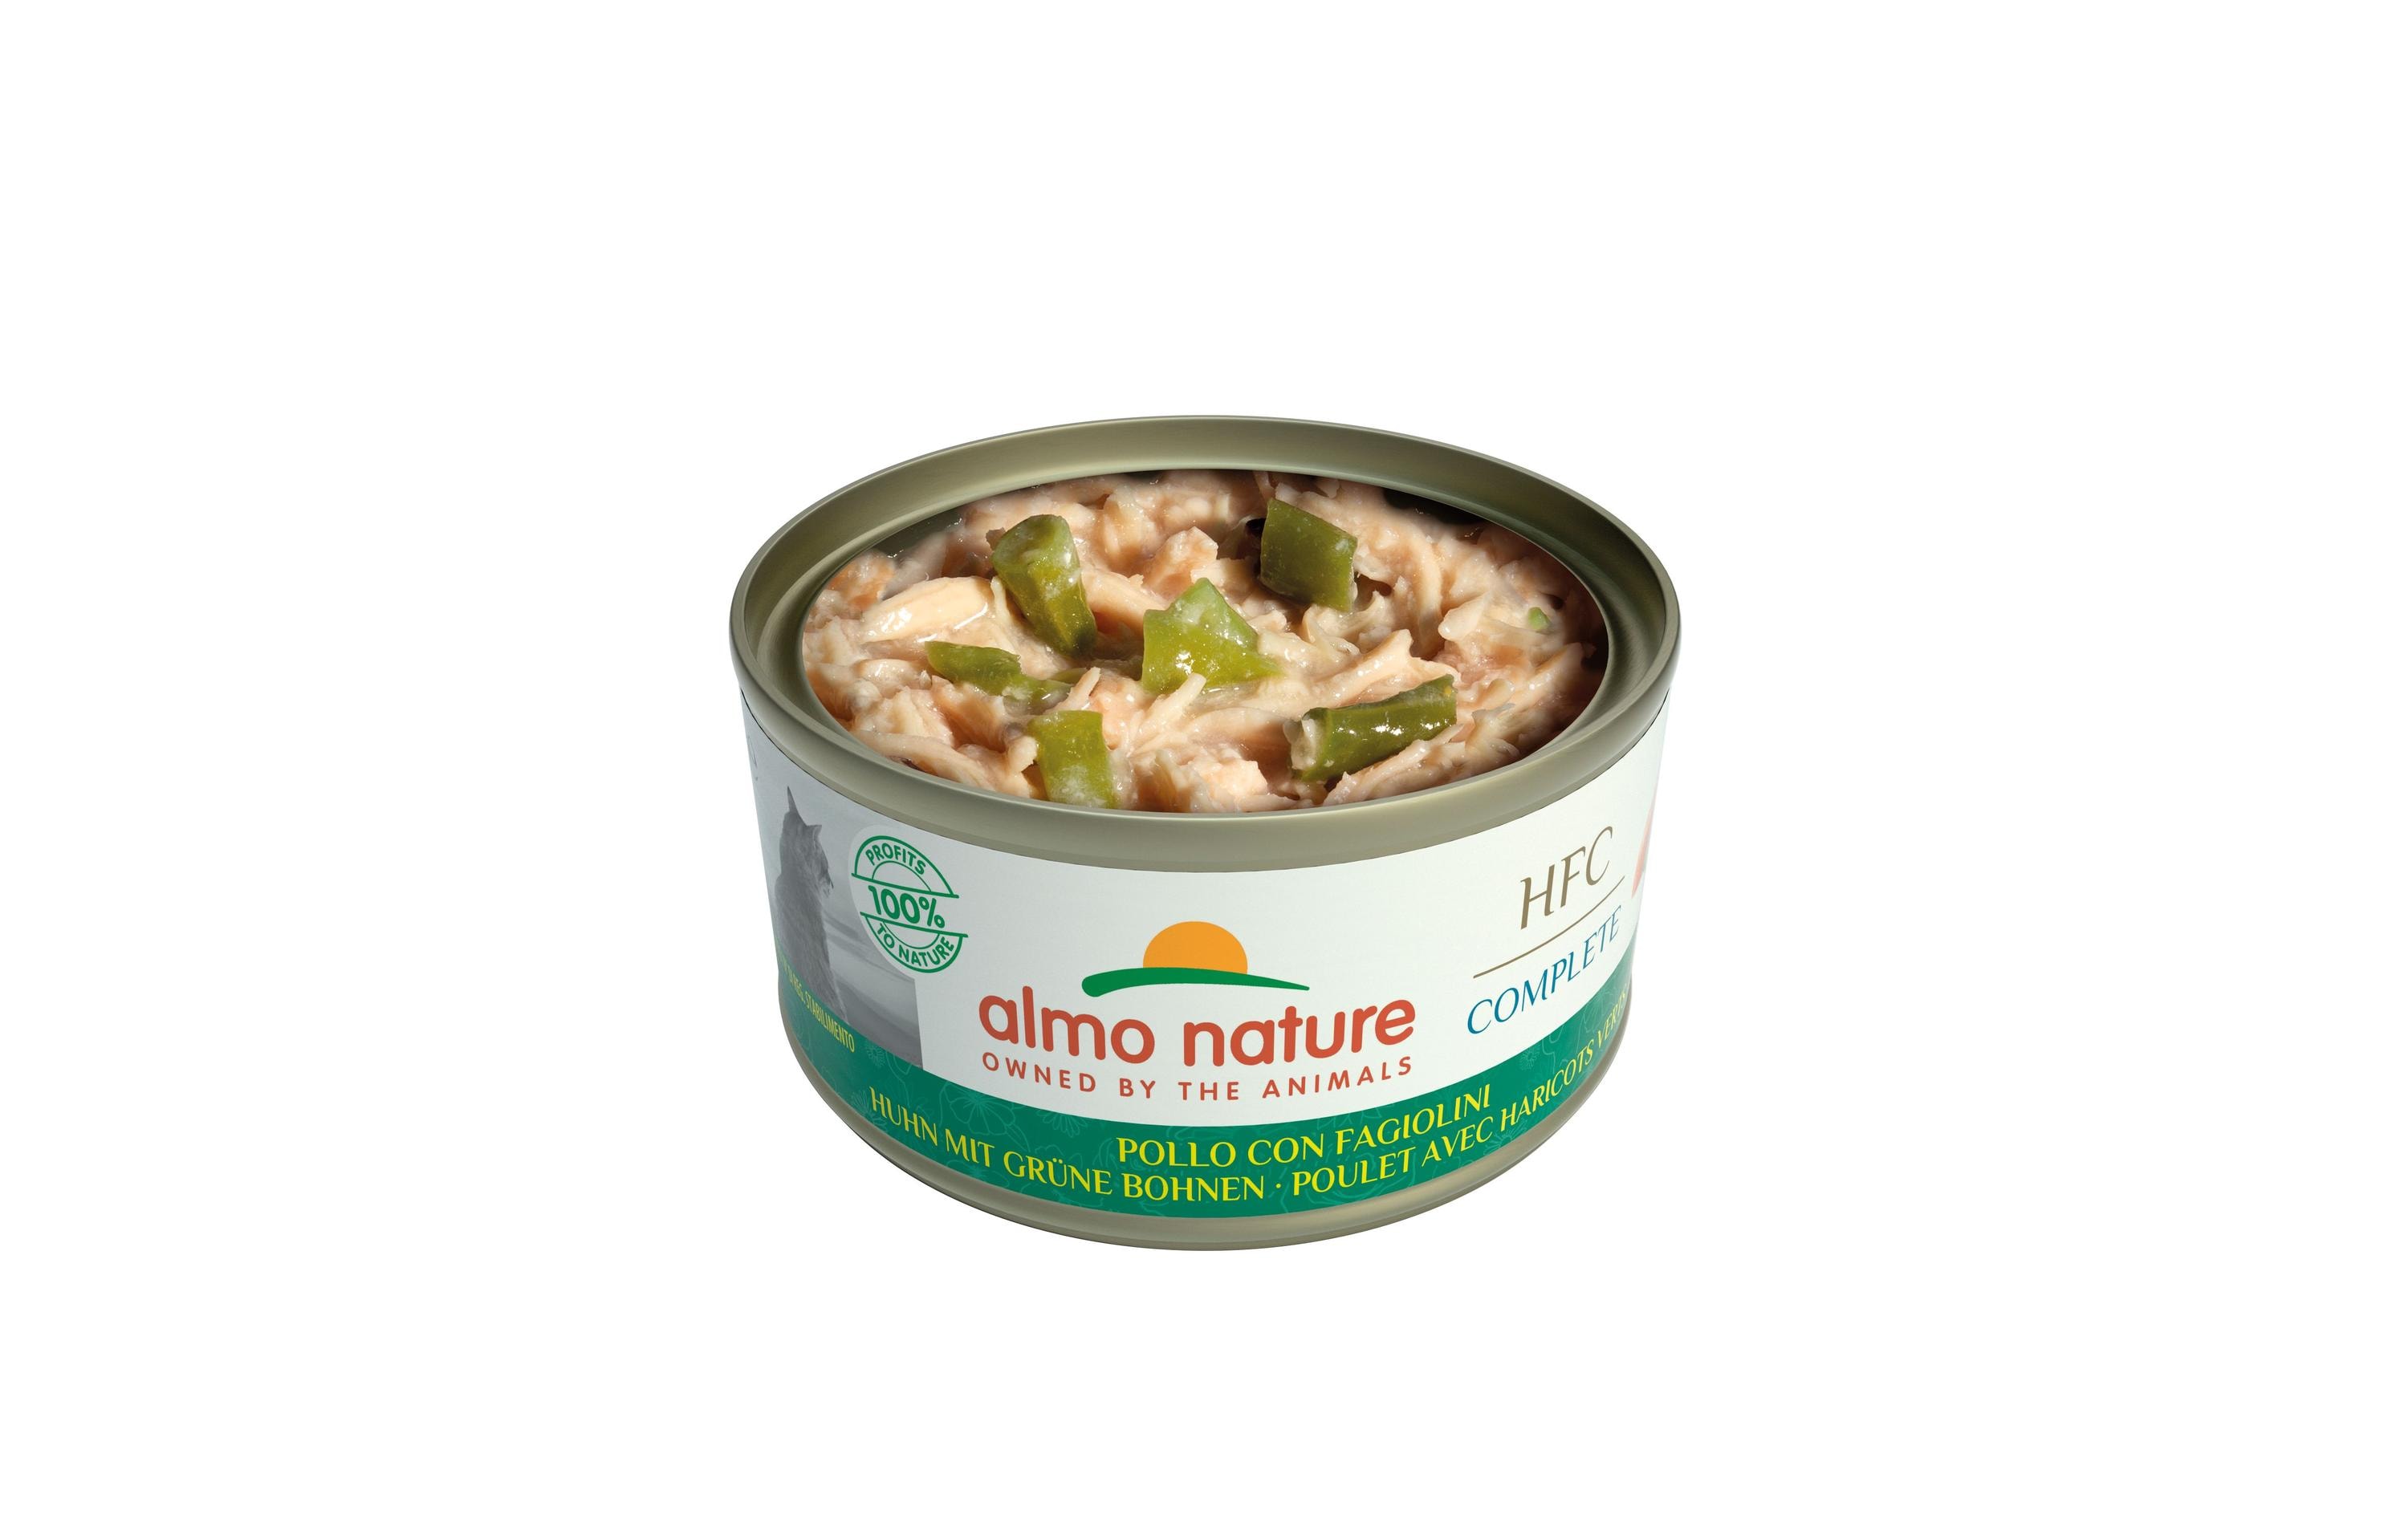 Almo Nature Nassfutter HFC Complete Huhn mit Grünen Bohnen, 24 x 70 g